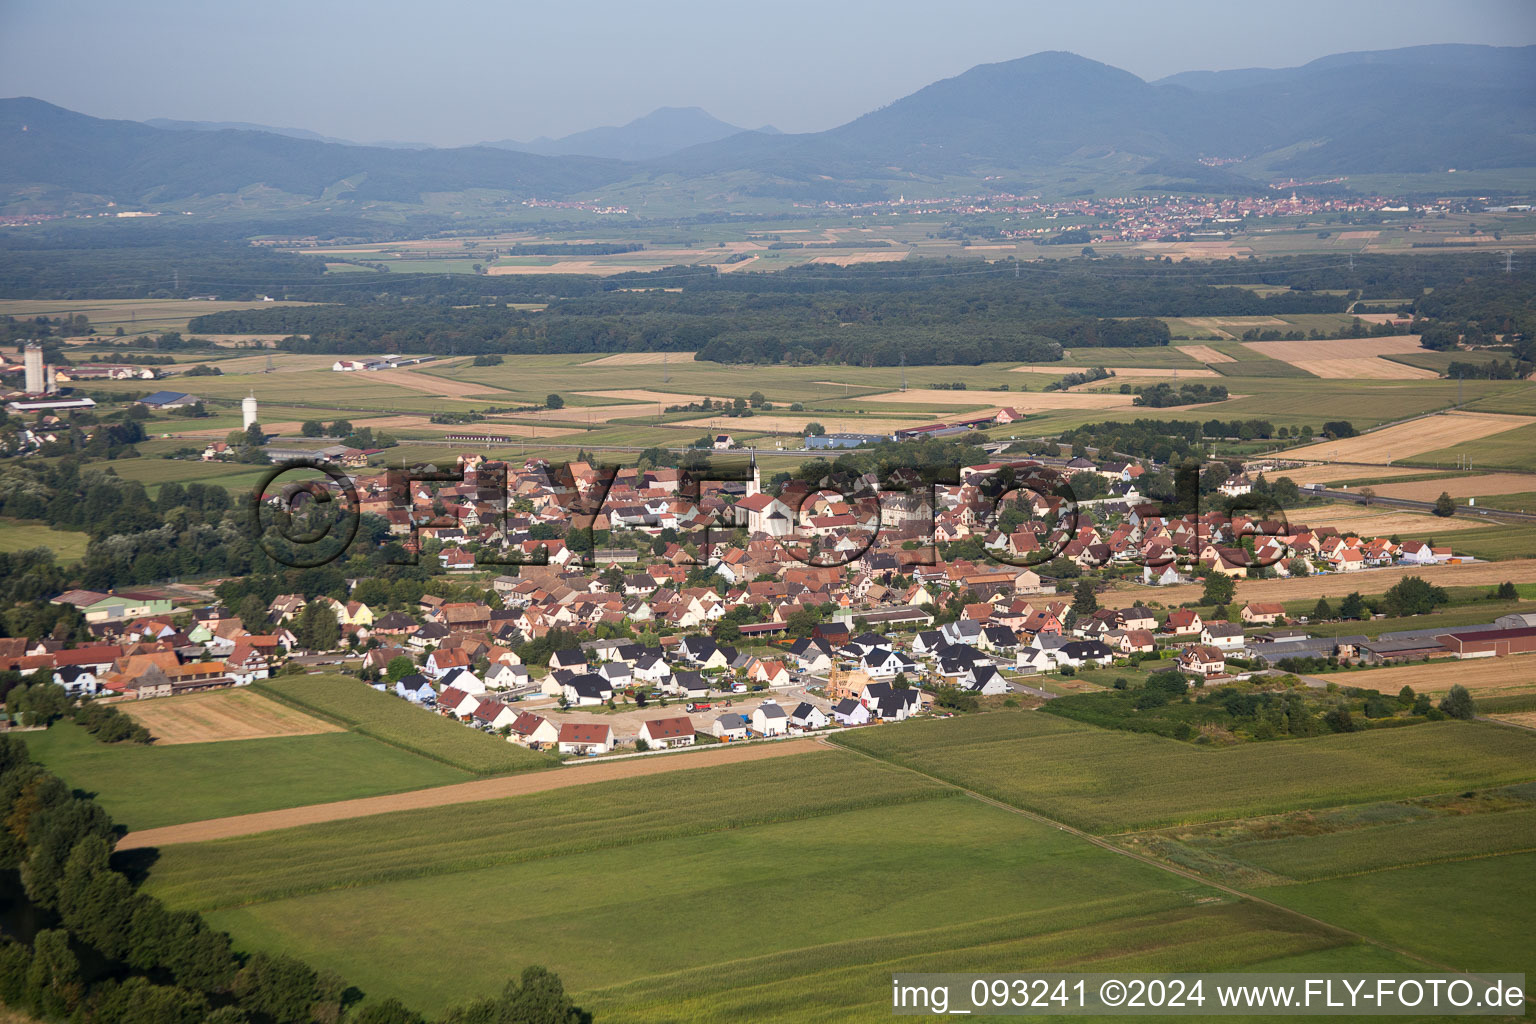 Luftbild von Dorfkern an den Fluß- Uferbereichen des Ill vor dem Panorama des Vogesenrandes in Sermersheim in Grand Est im Bundesland Bas-Rhin, Frankreich